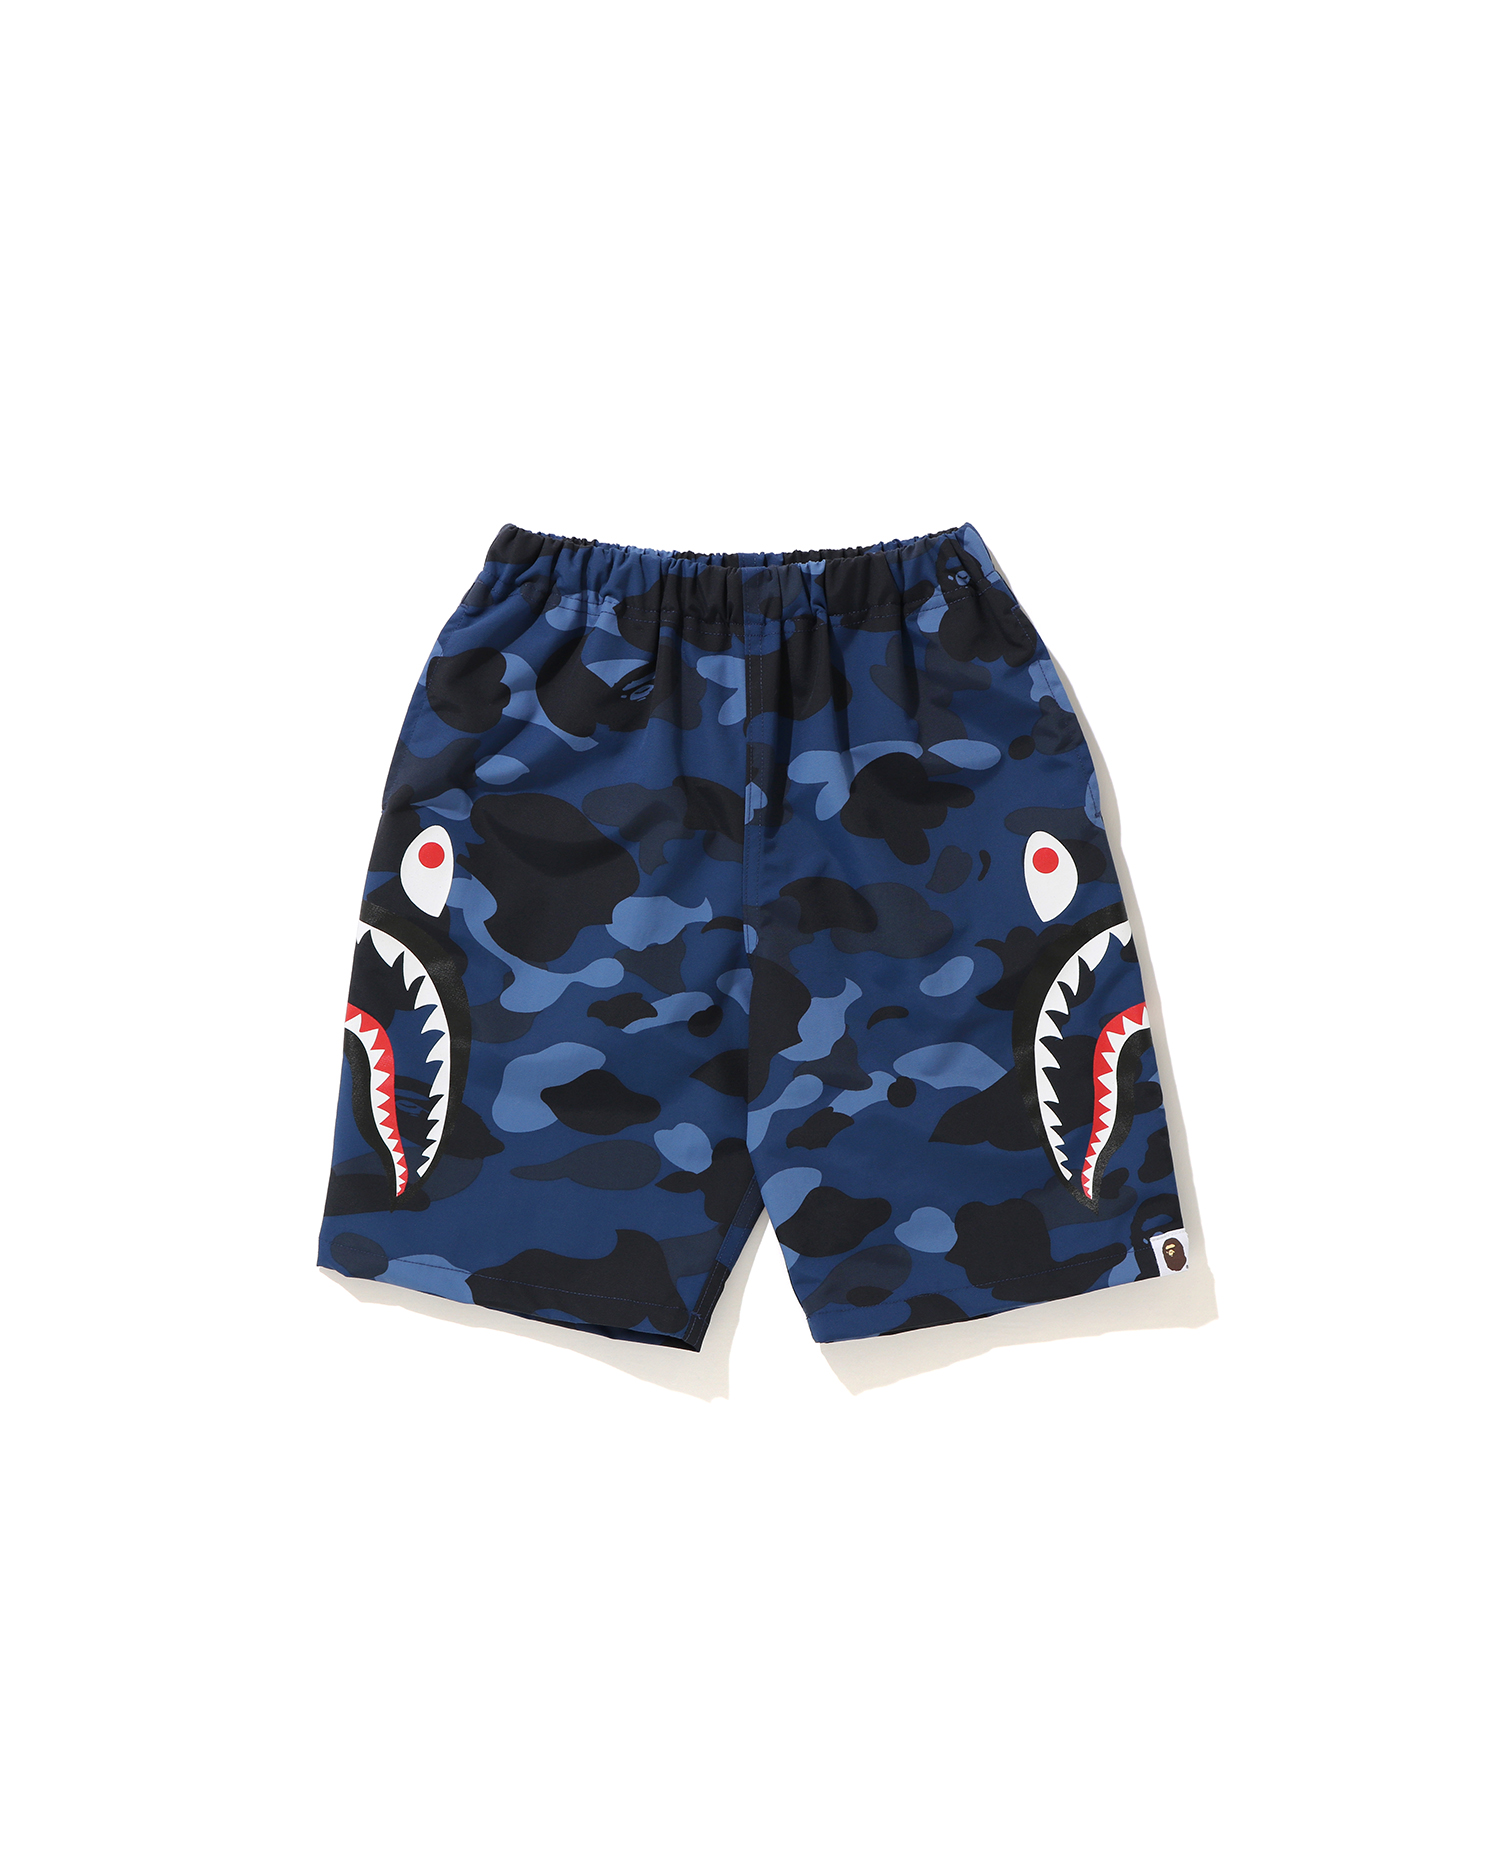 半額a bathing ape side shark beach shorts パンツ